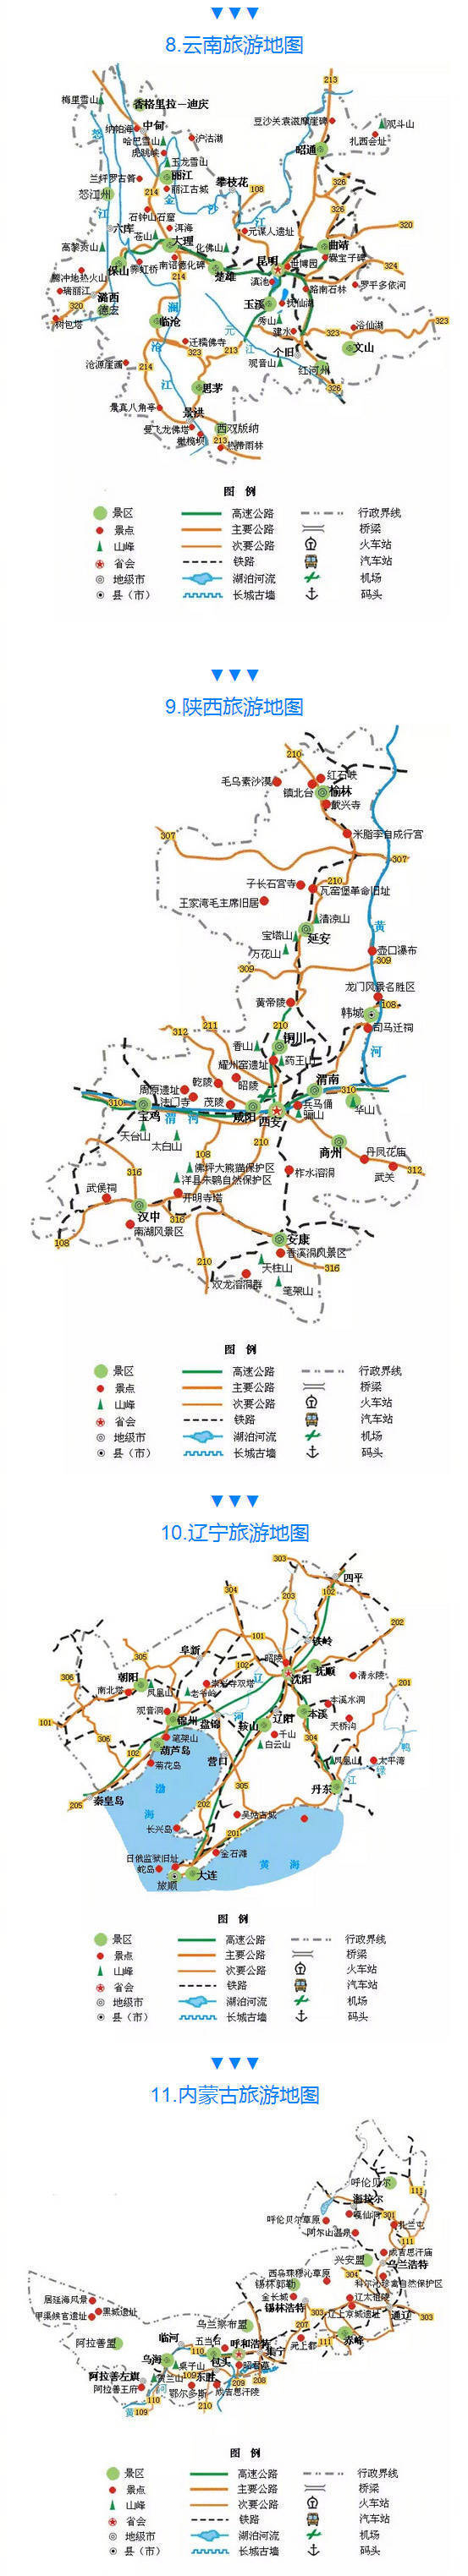 中国各地旅游地图